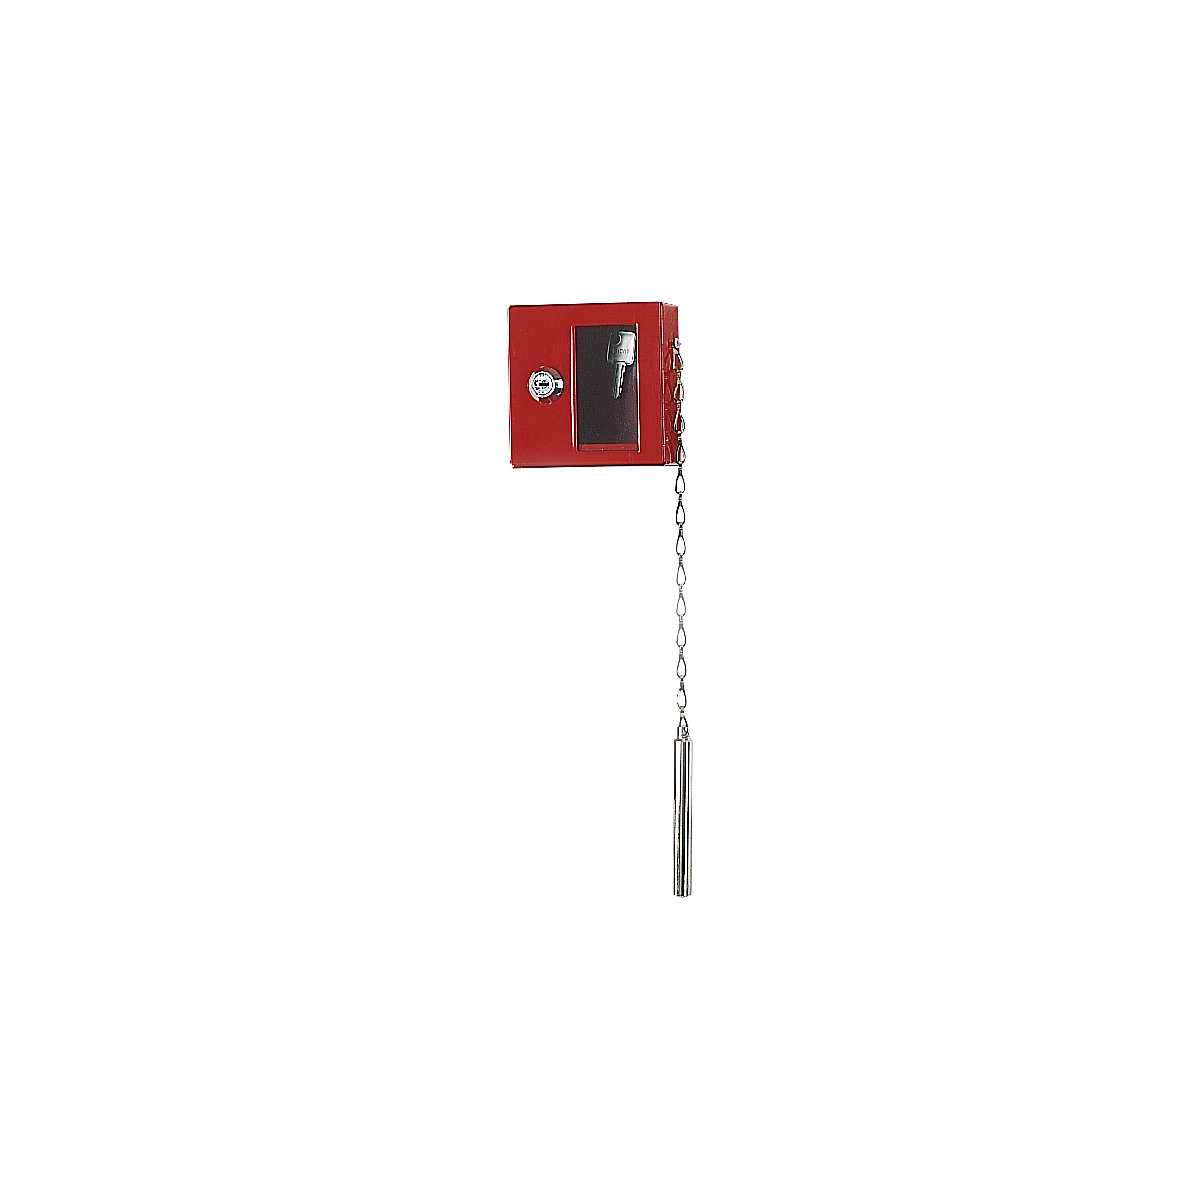 rot 120x130x40mm zur Wandmontage inkl FELGNER Notschlüsselkasten TS 1021 2 Schlüssel Notschlüsselbox mit Glasscheibe & Klöppel 